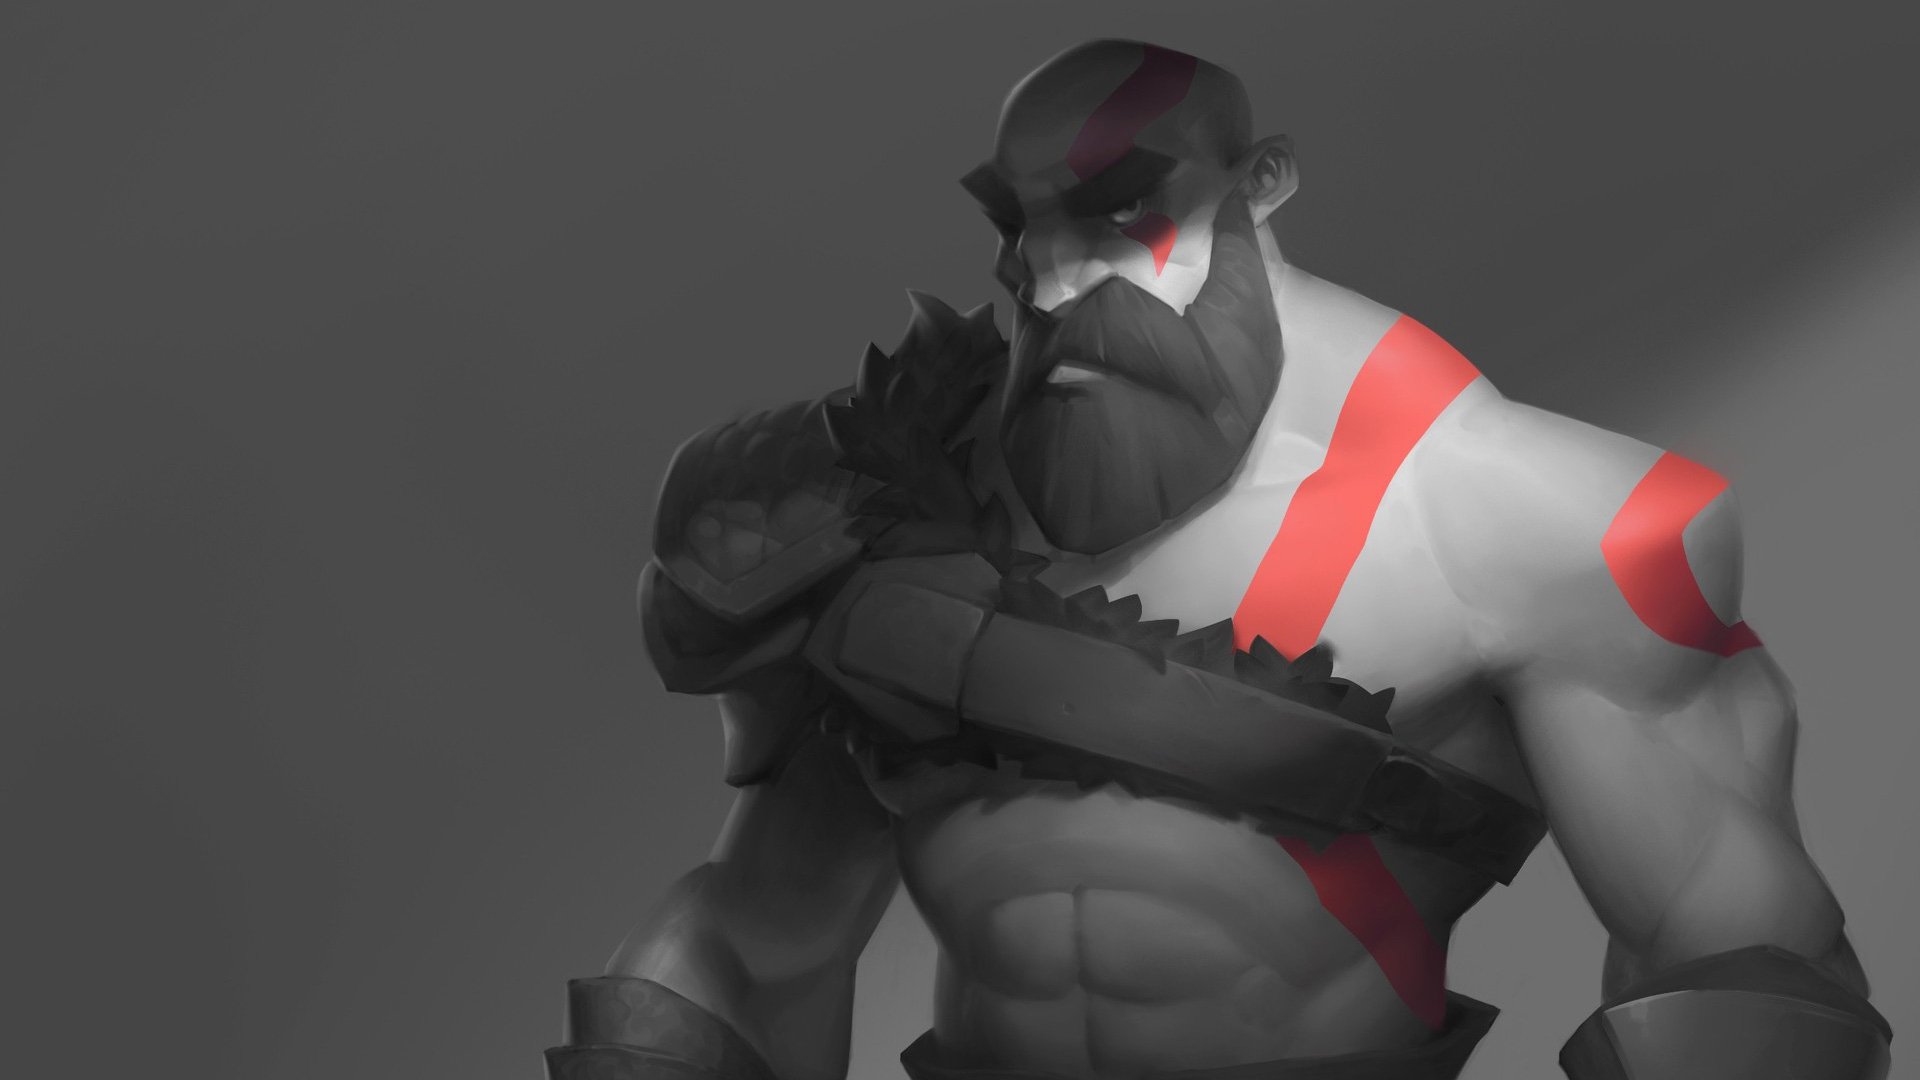 Fondos de pantalla Kratos FanArt de God of War